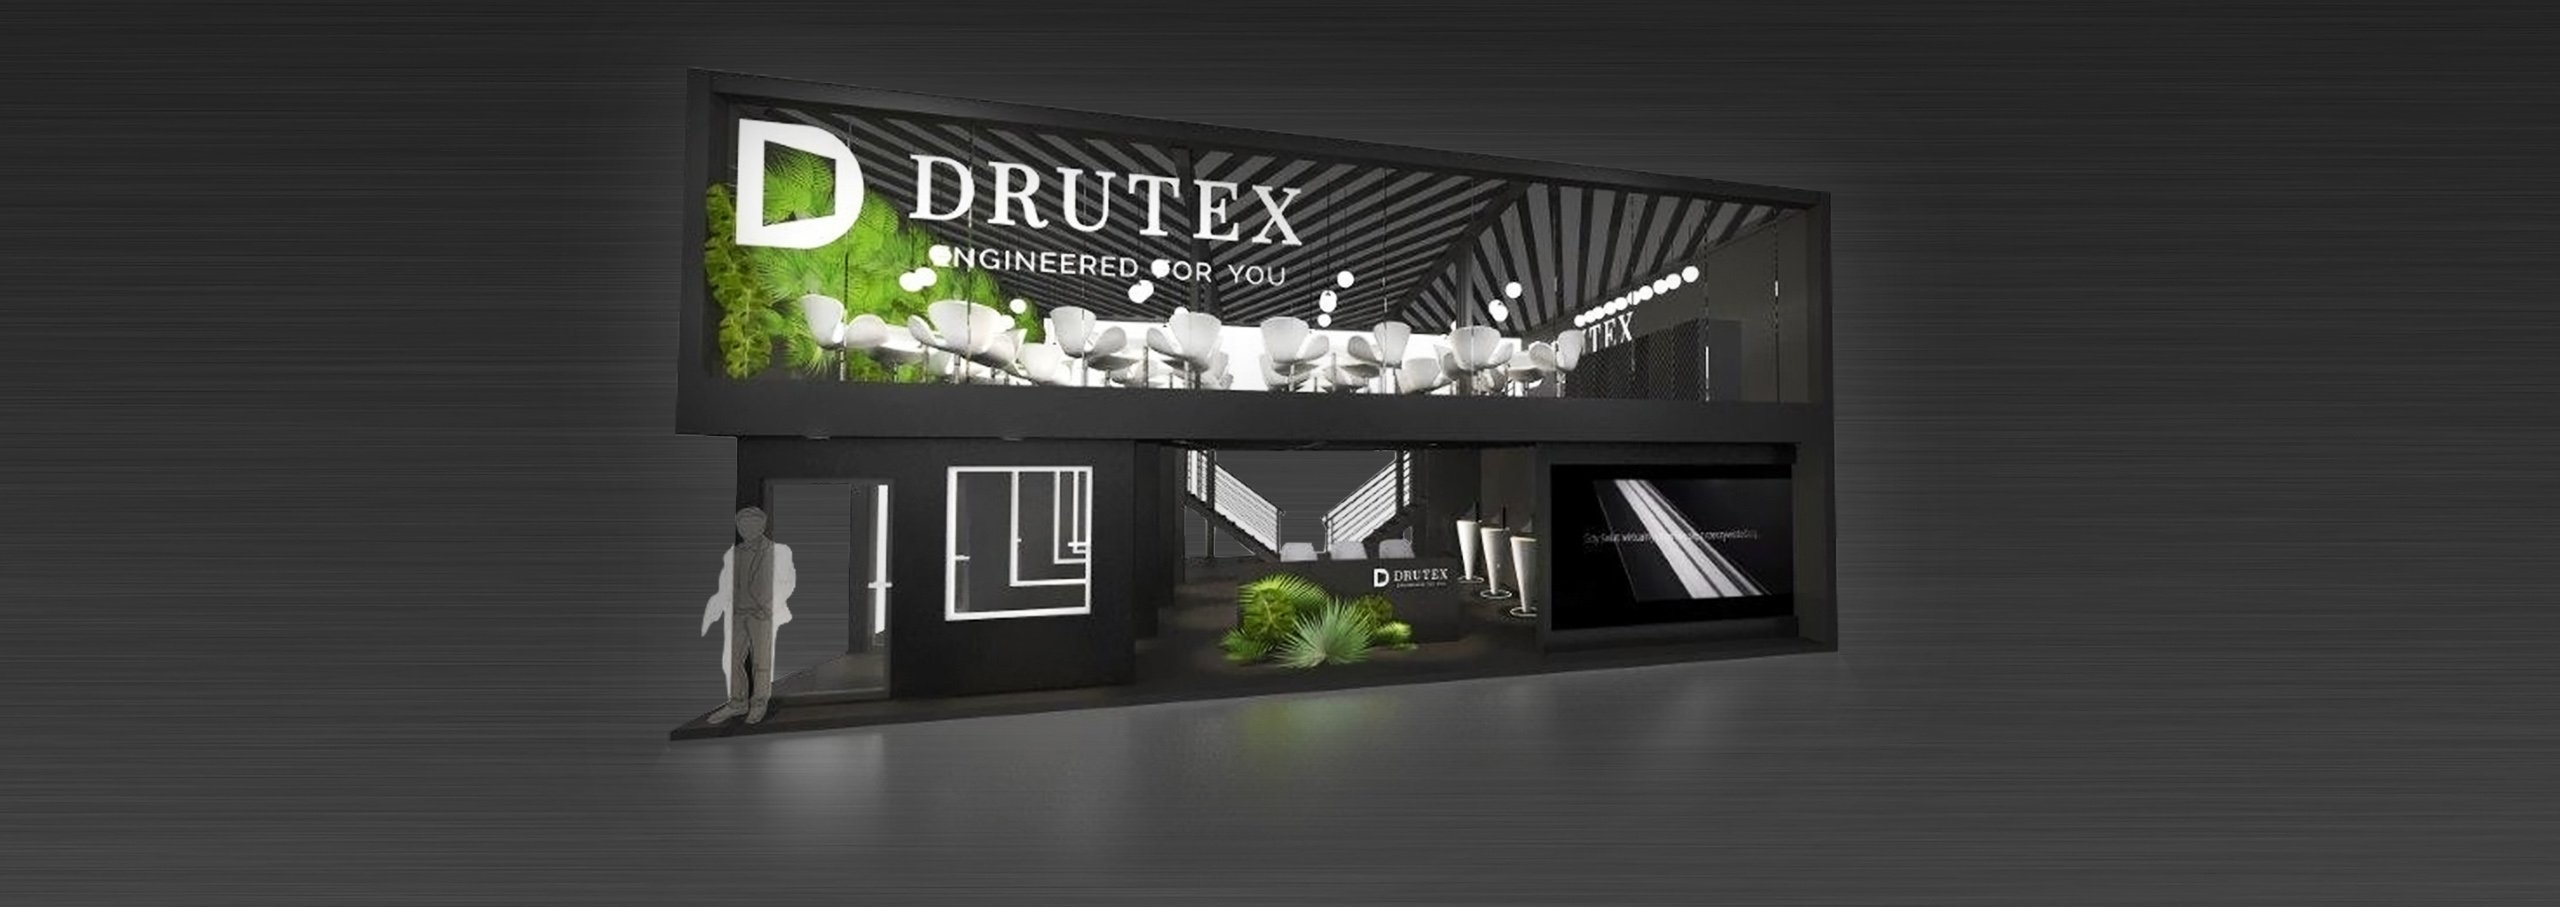 Drutex na targach Fensterbau Frontale 2018 w Niemczech!